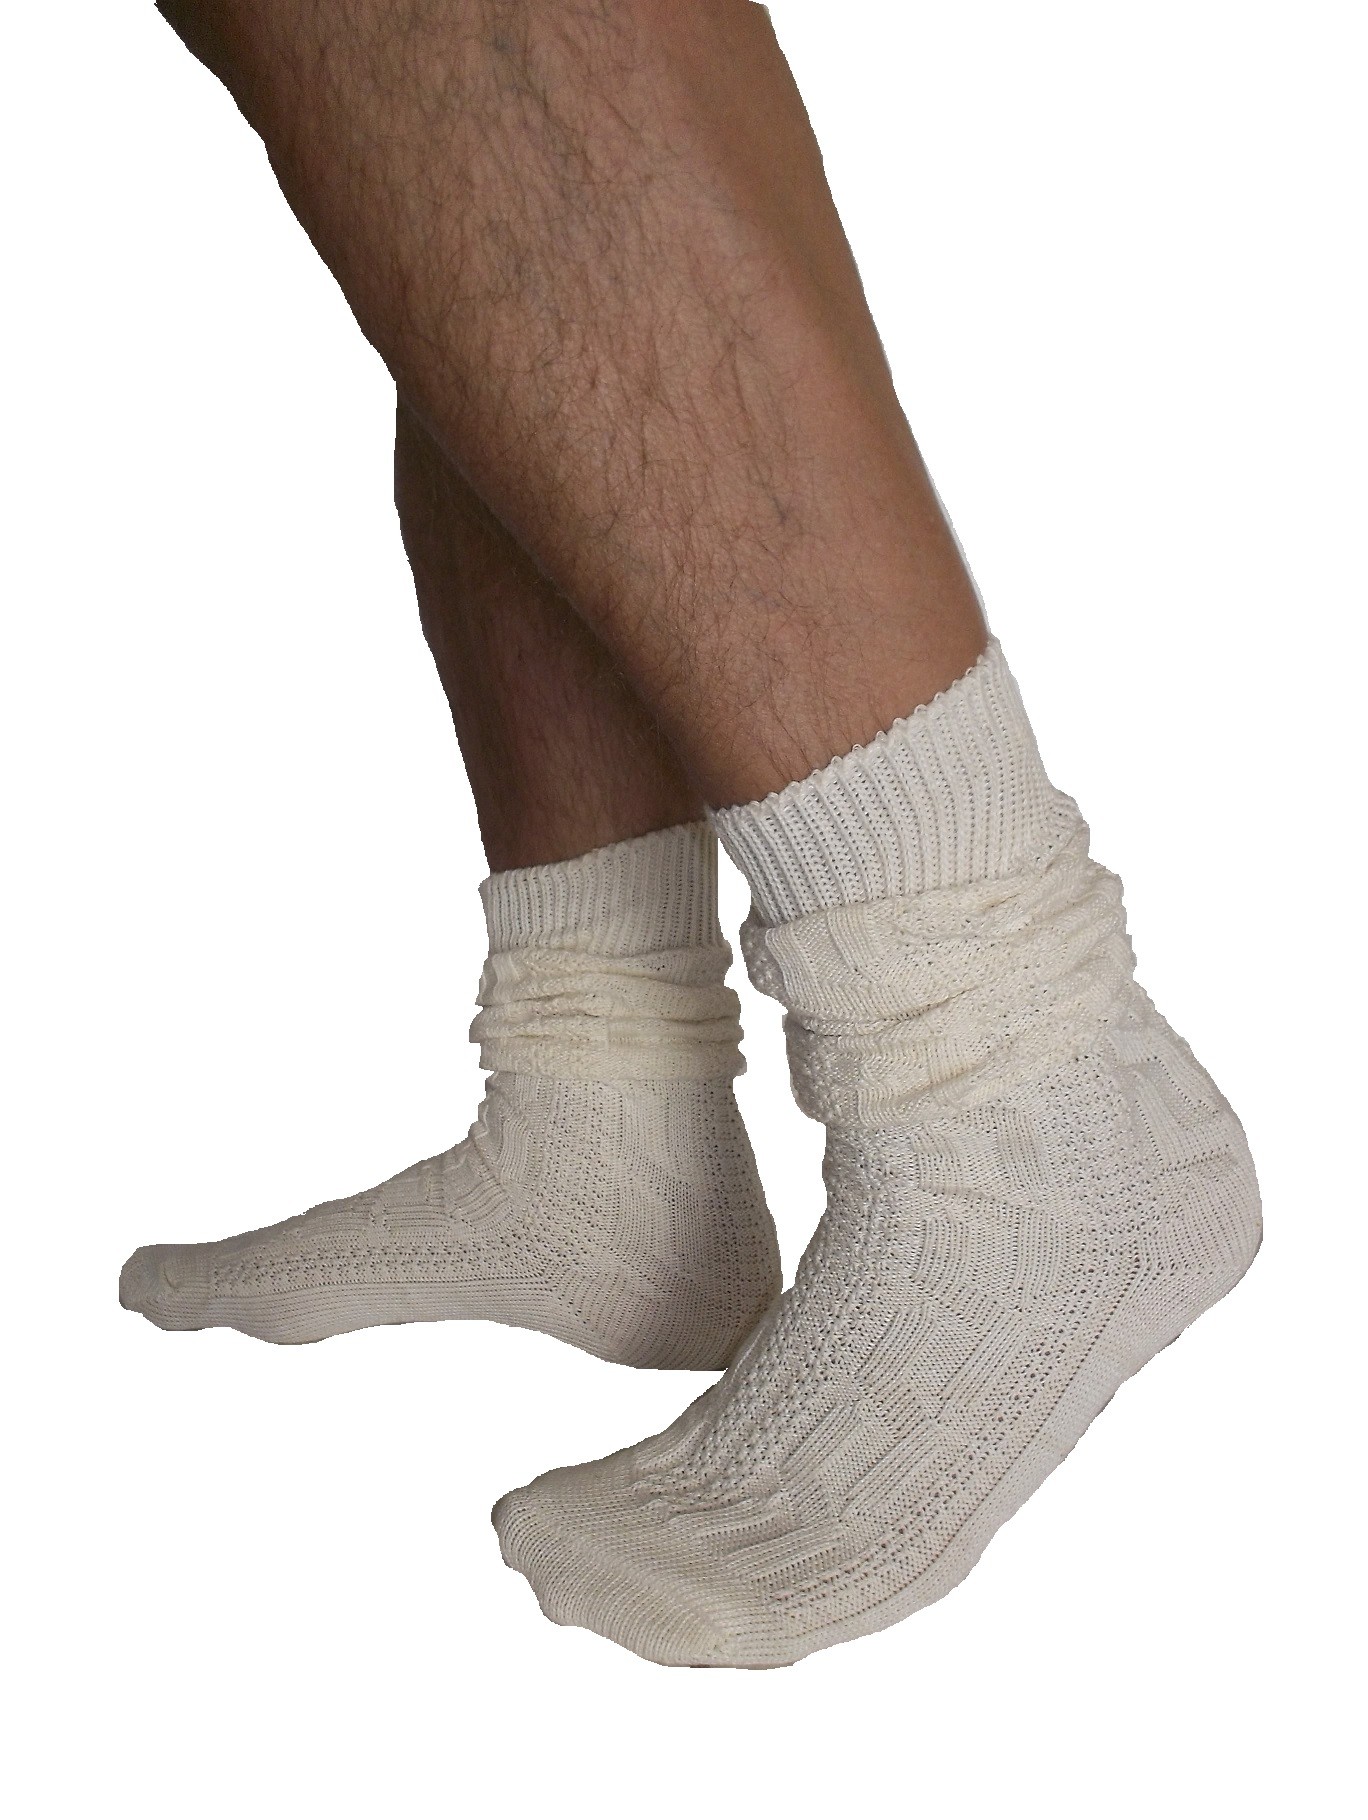 lederhosen socks